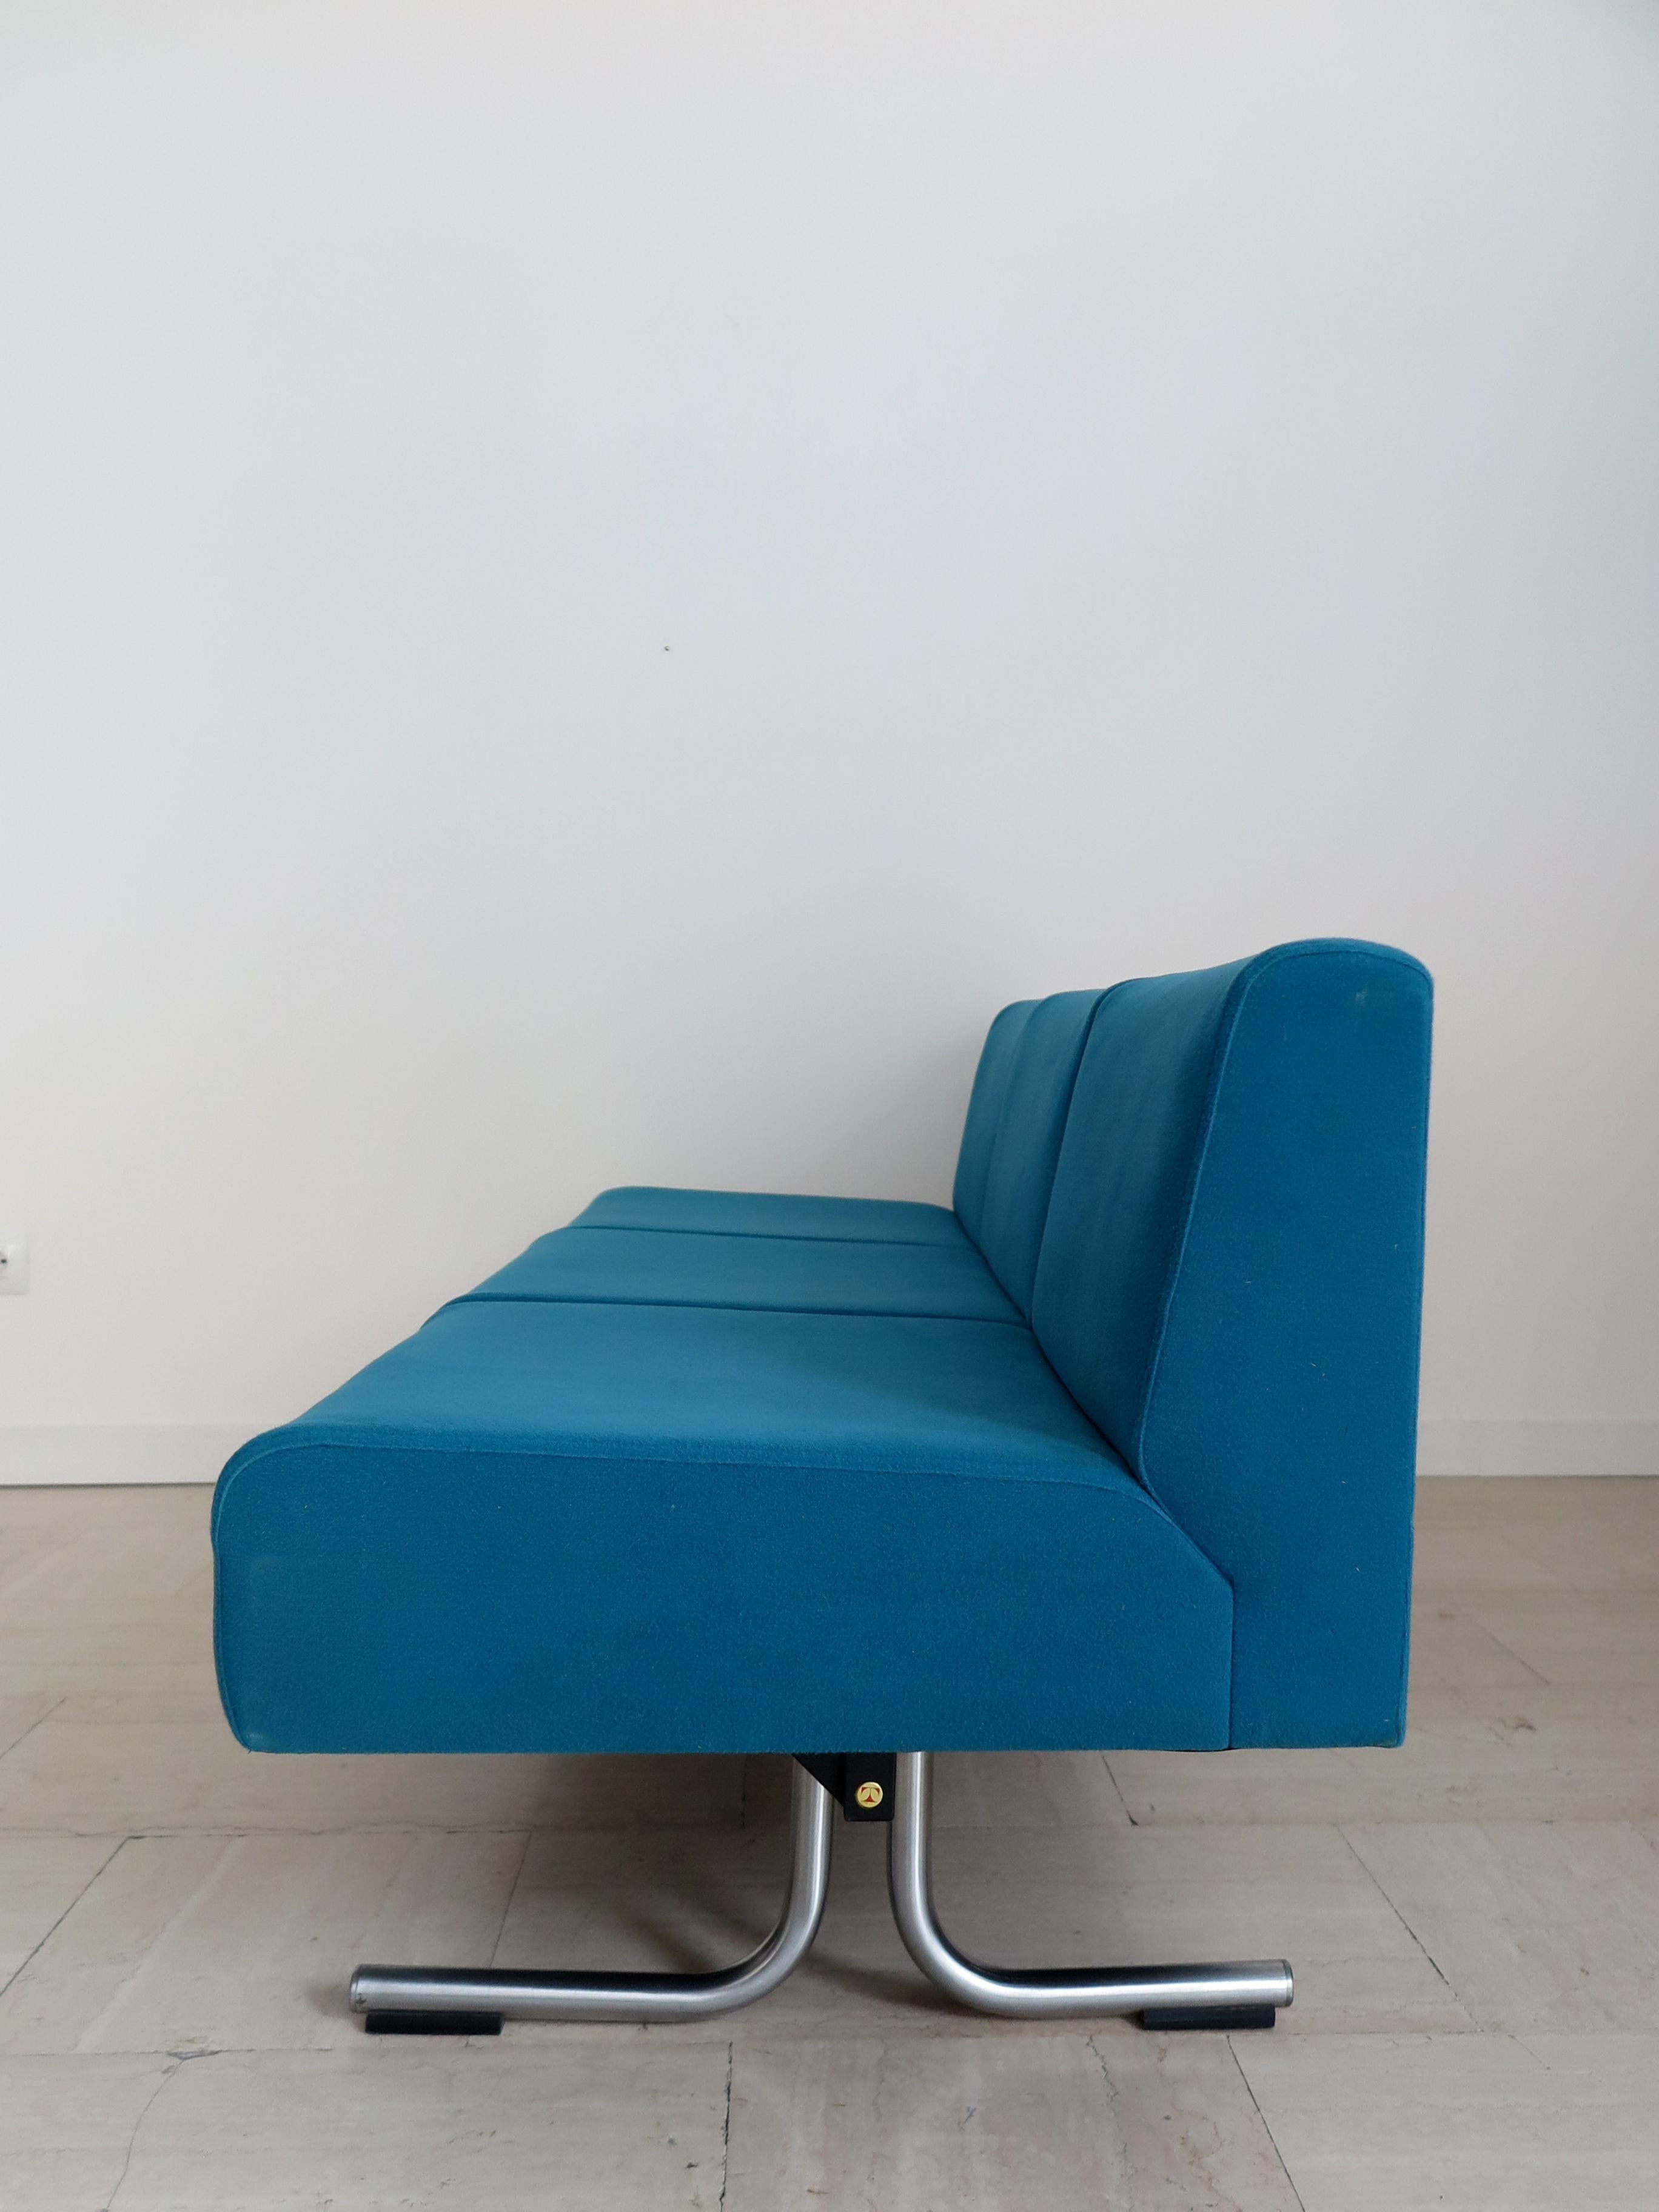 Osvaldo Borsani for Tecno Italian Blue Sofa 1970s In Good Condition For Sale In Reggio Emilia, IT